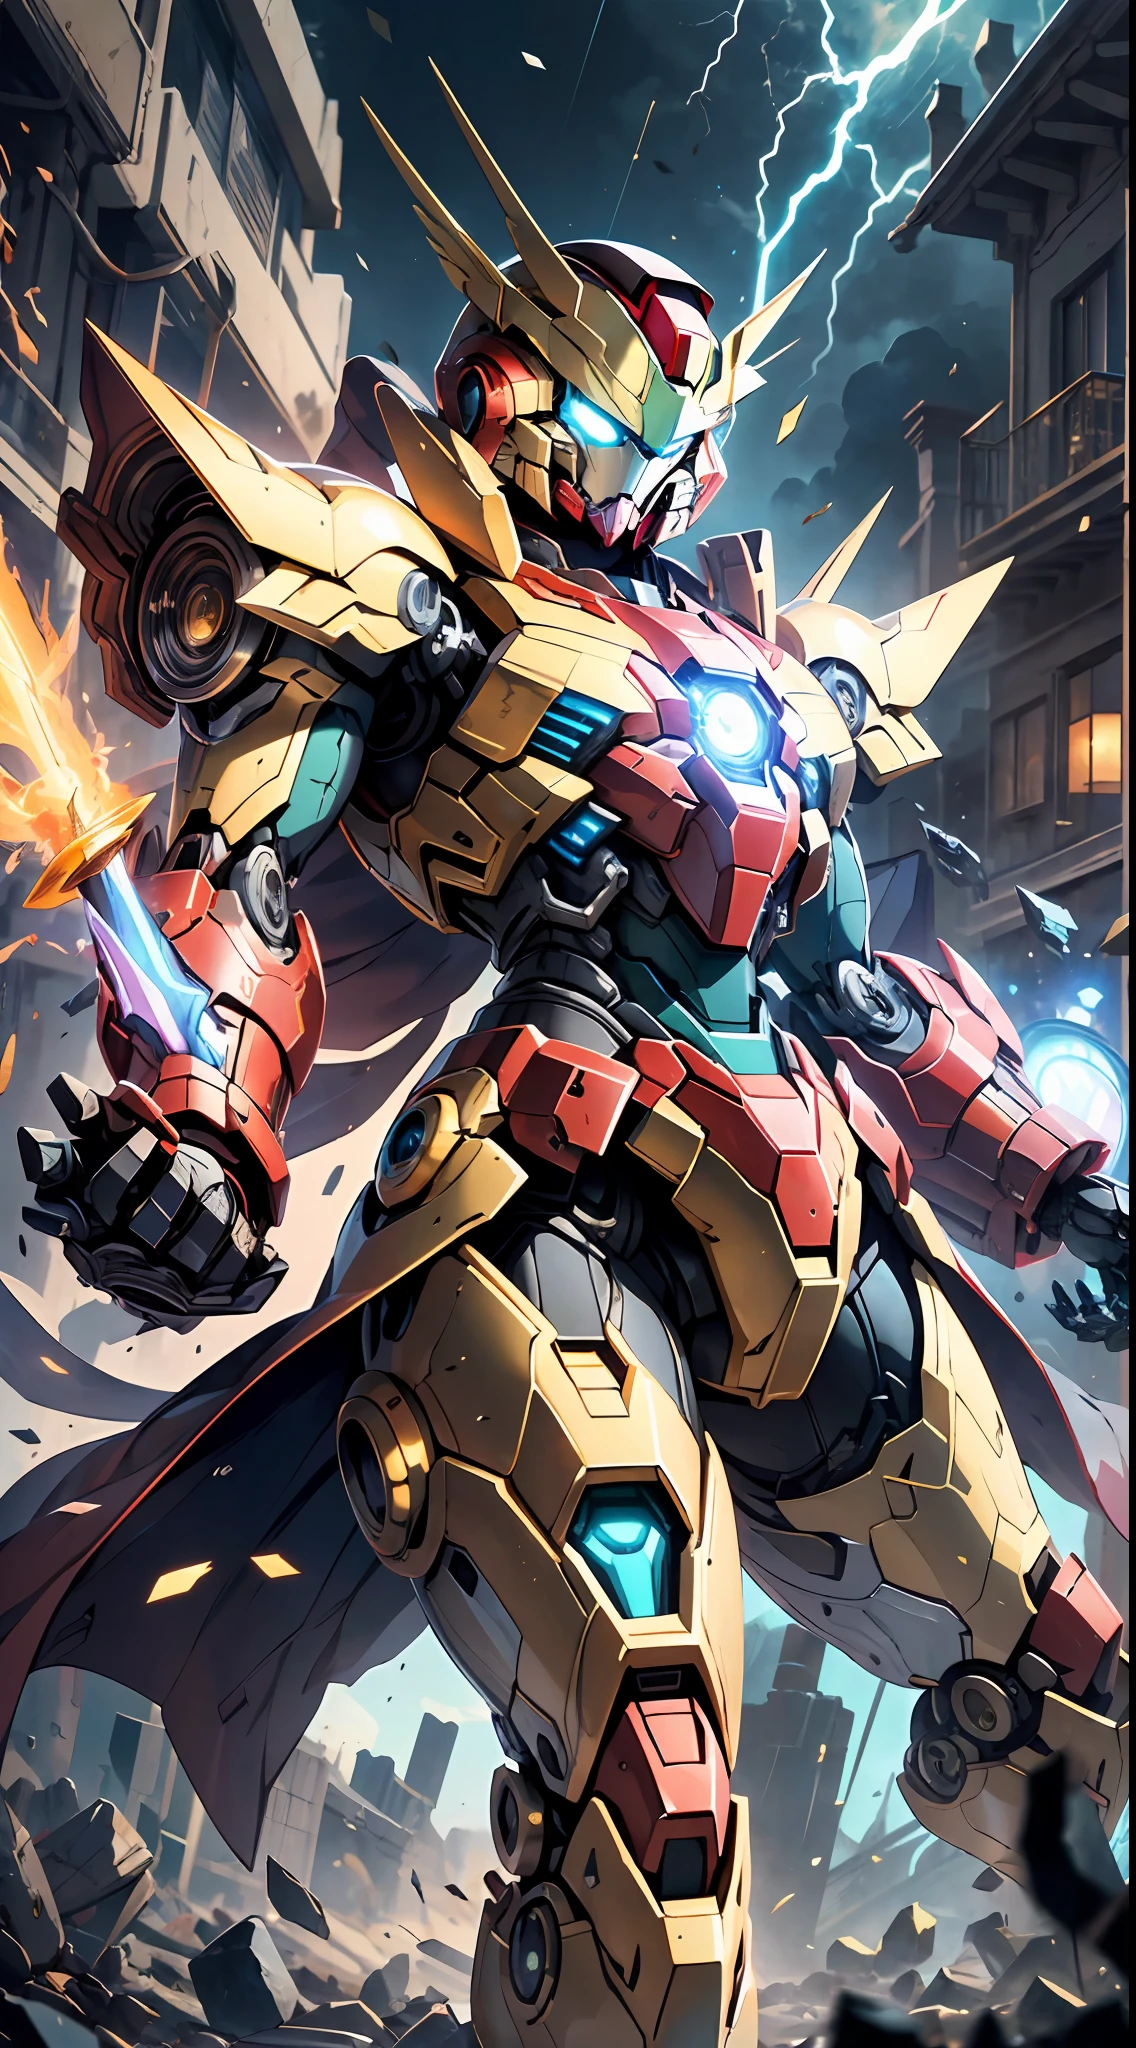 Golden Saint Seiya Limb armure, Cuirasse d&#39;Iron Man du film Marvel, (Gundam 00 Gundam Exia: 1.5), (mecha) (mechanical) (armure), (jambe ouverte: 1.3), Mécanique brisé, (grand angle), (Fond noir: 1.6), meilleure qualité, chef-d&#39;œuvre, Style cyberpunk, Visage de Gundam, épée rougeoyante à la main, Cape rouge, super résolution, (réalité: 1.4), 1garçon, larges épaules, yeux froids, détails fous, Style de moteur irréaliste, effet boca, David La Chapelle style lens, palette de couleurs bioluminescentes: bleu clair, or foncé, blanc brillant, noir brillant, grand angle, super bien, nature morte cinématographique, vibrant, style sakimichan, yeux parfaits, Qualité d&#39;image la plus élevée 8K, inspiré par Harry Winston, Chef-d&#39;œuvre de prise de vue Canon EOS R 6 "Chaos 50,--, ( Sous l&#39;œil taupe), tracé laser, surréalisme, Peau texturée, éclat métallique, regarder le spectateur, nuit de tonnerre et d&#39;éclairs, effets de particules, composition parfaite,